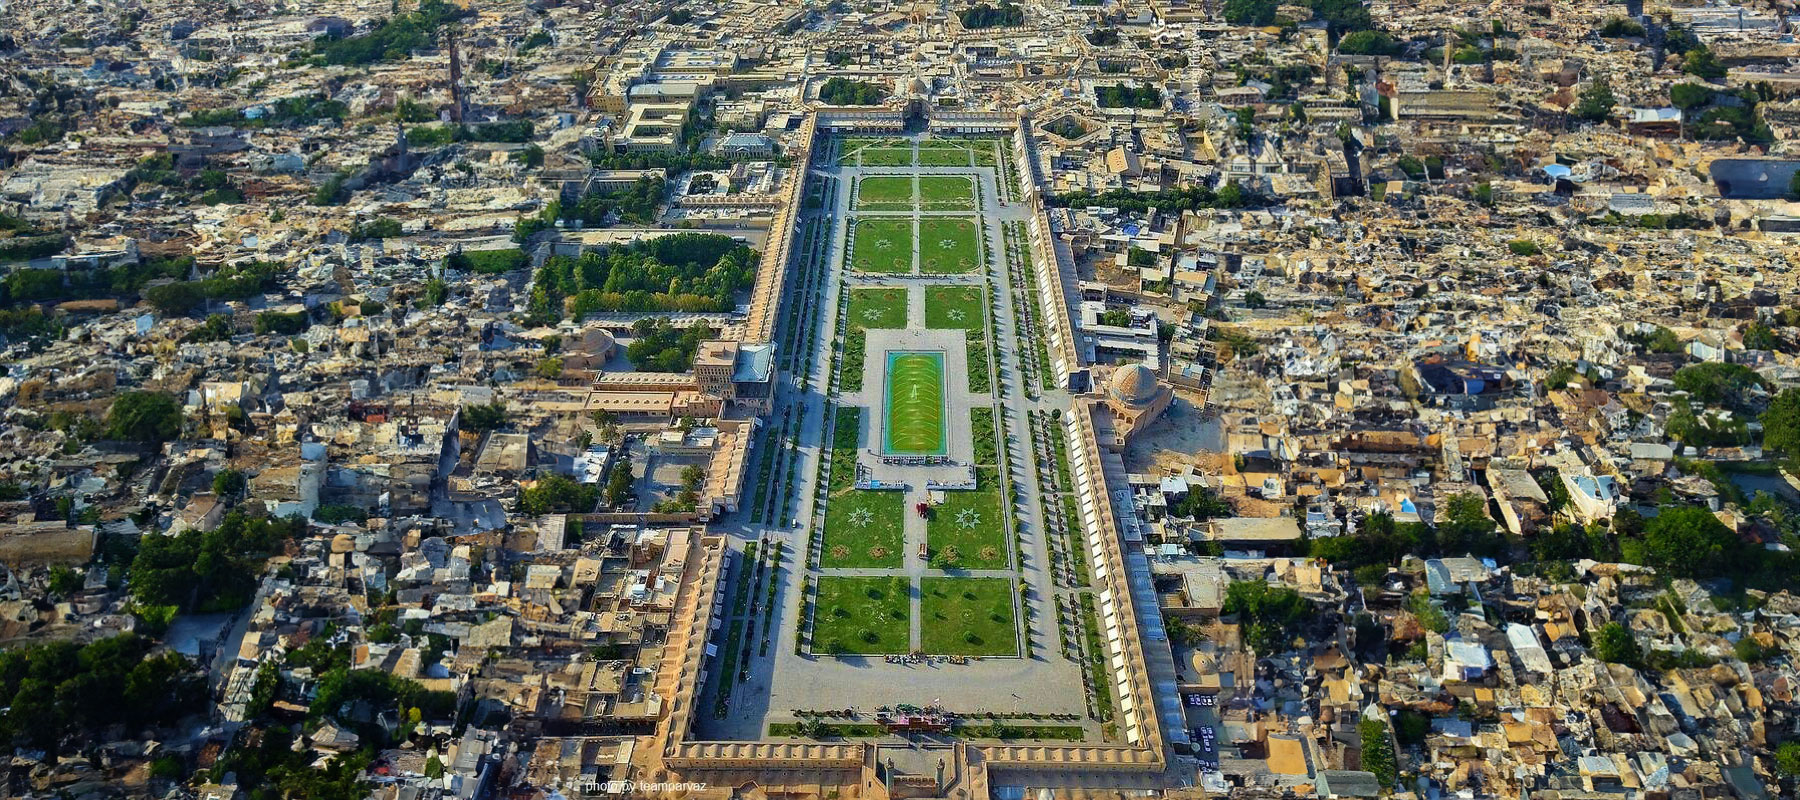 ساحة نقش جهان: لمحة عن التراث الغني في أصفهان